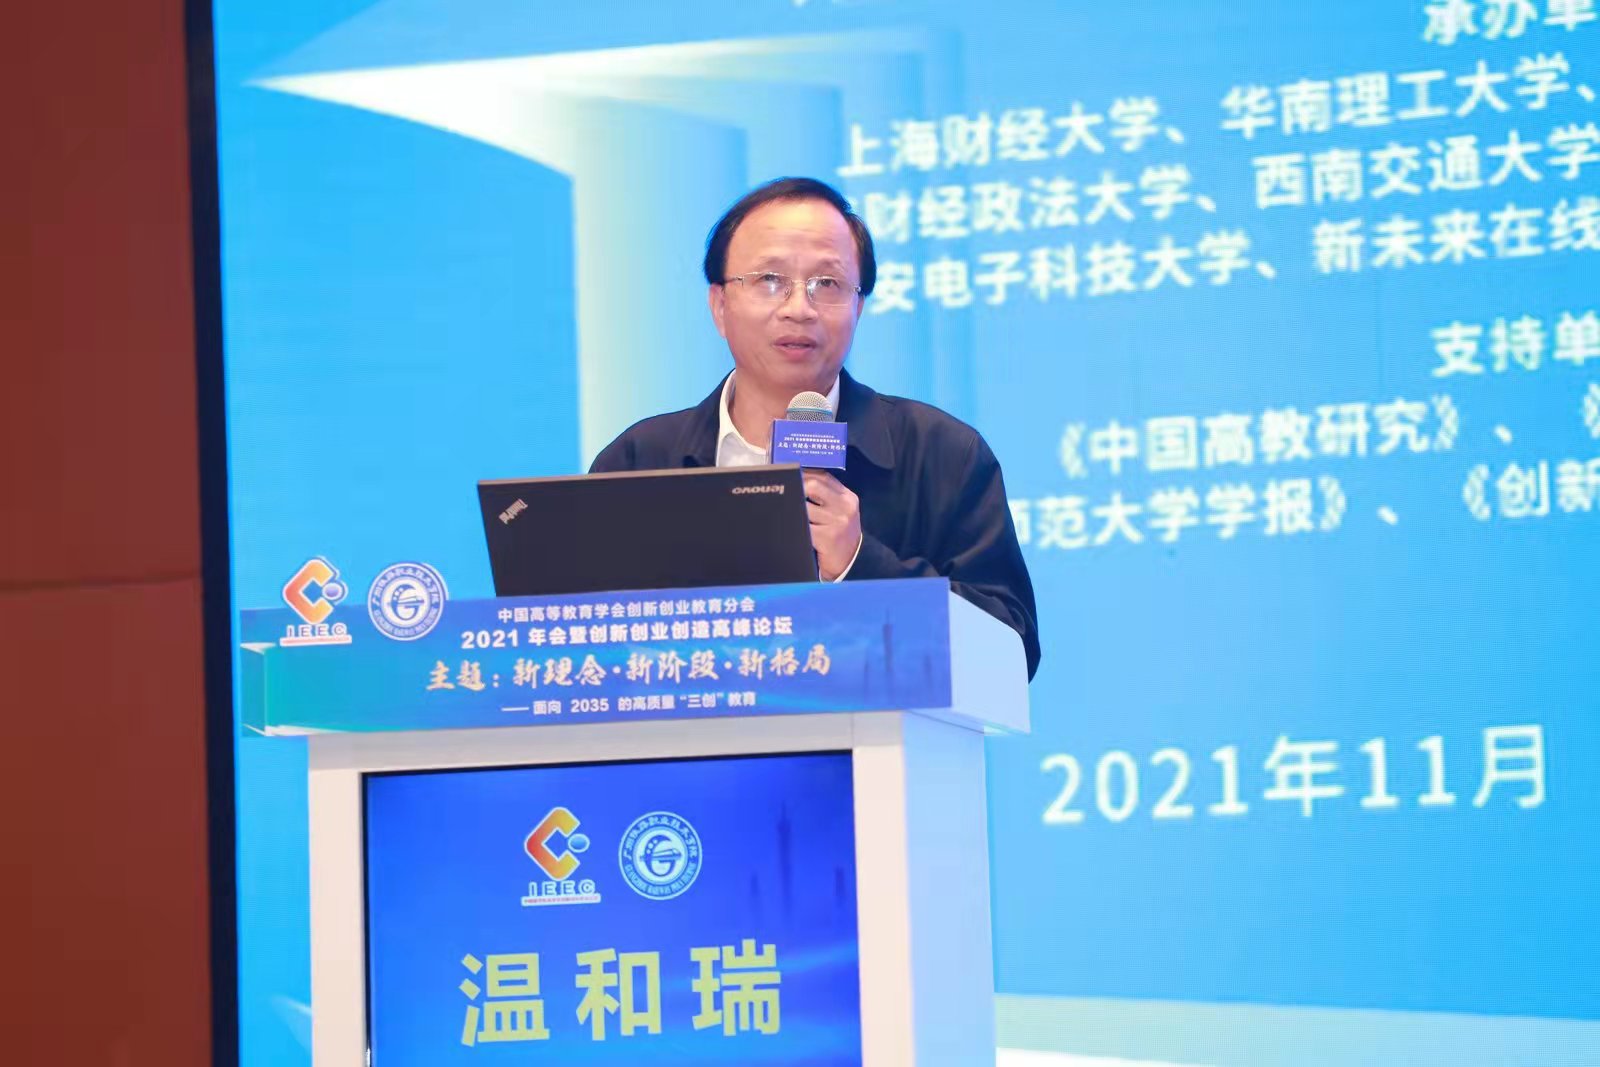 温和瑞校长出席2021年中国高等教育学会创新创业教育分会年会暨创新创业创造高峰论坛